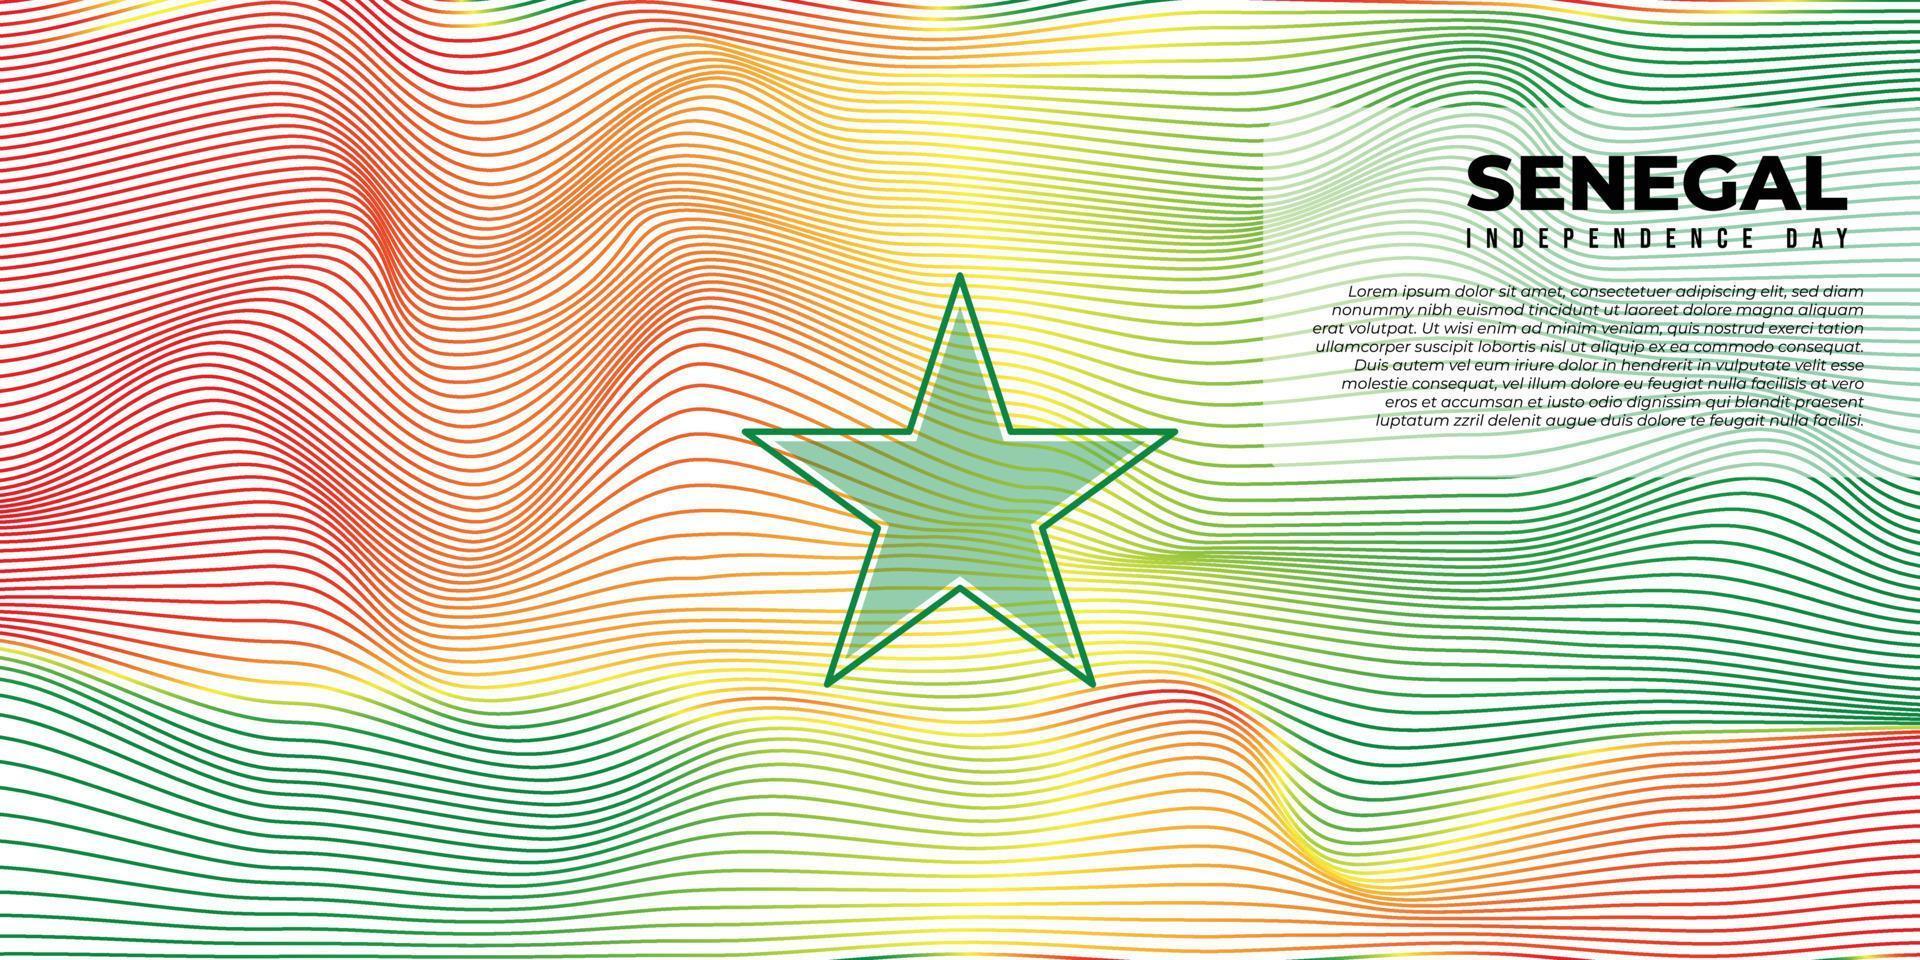 Hintergrund mit rotem, gelbem und grünem Design. senegal unabhängigkeitstag hintergrund mit grünem sterndesign. vektor